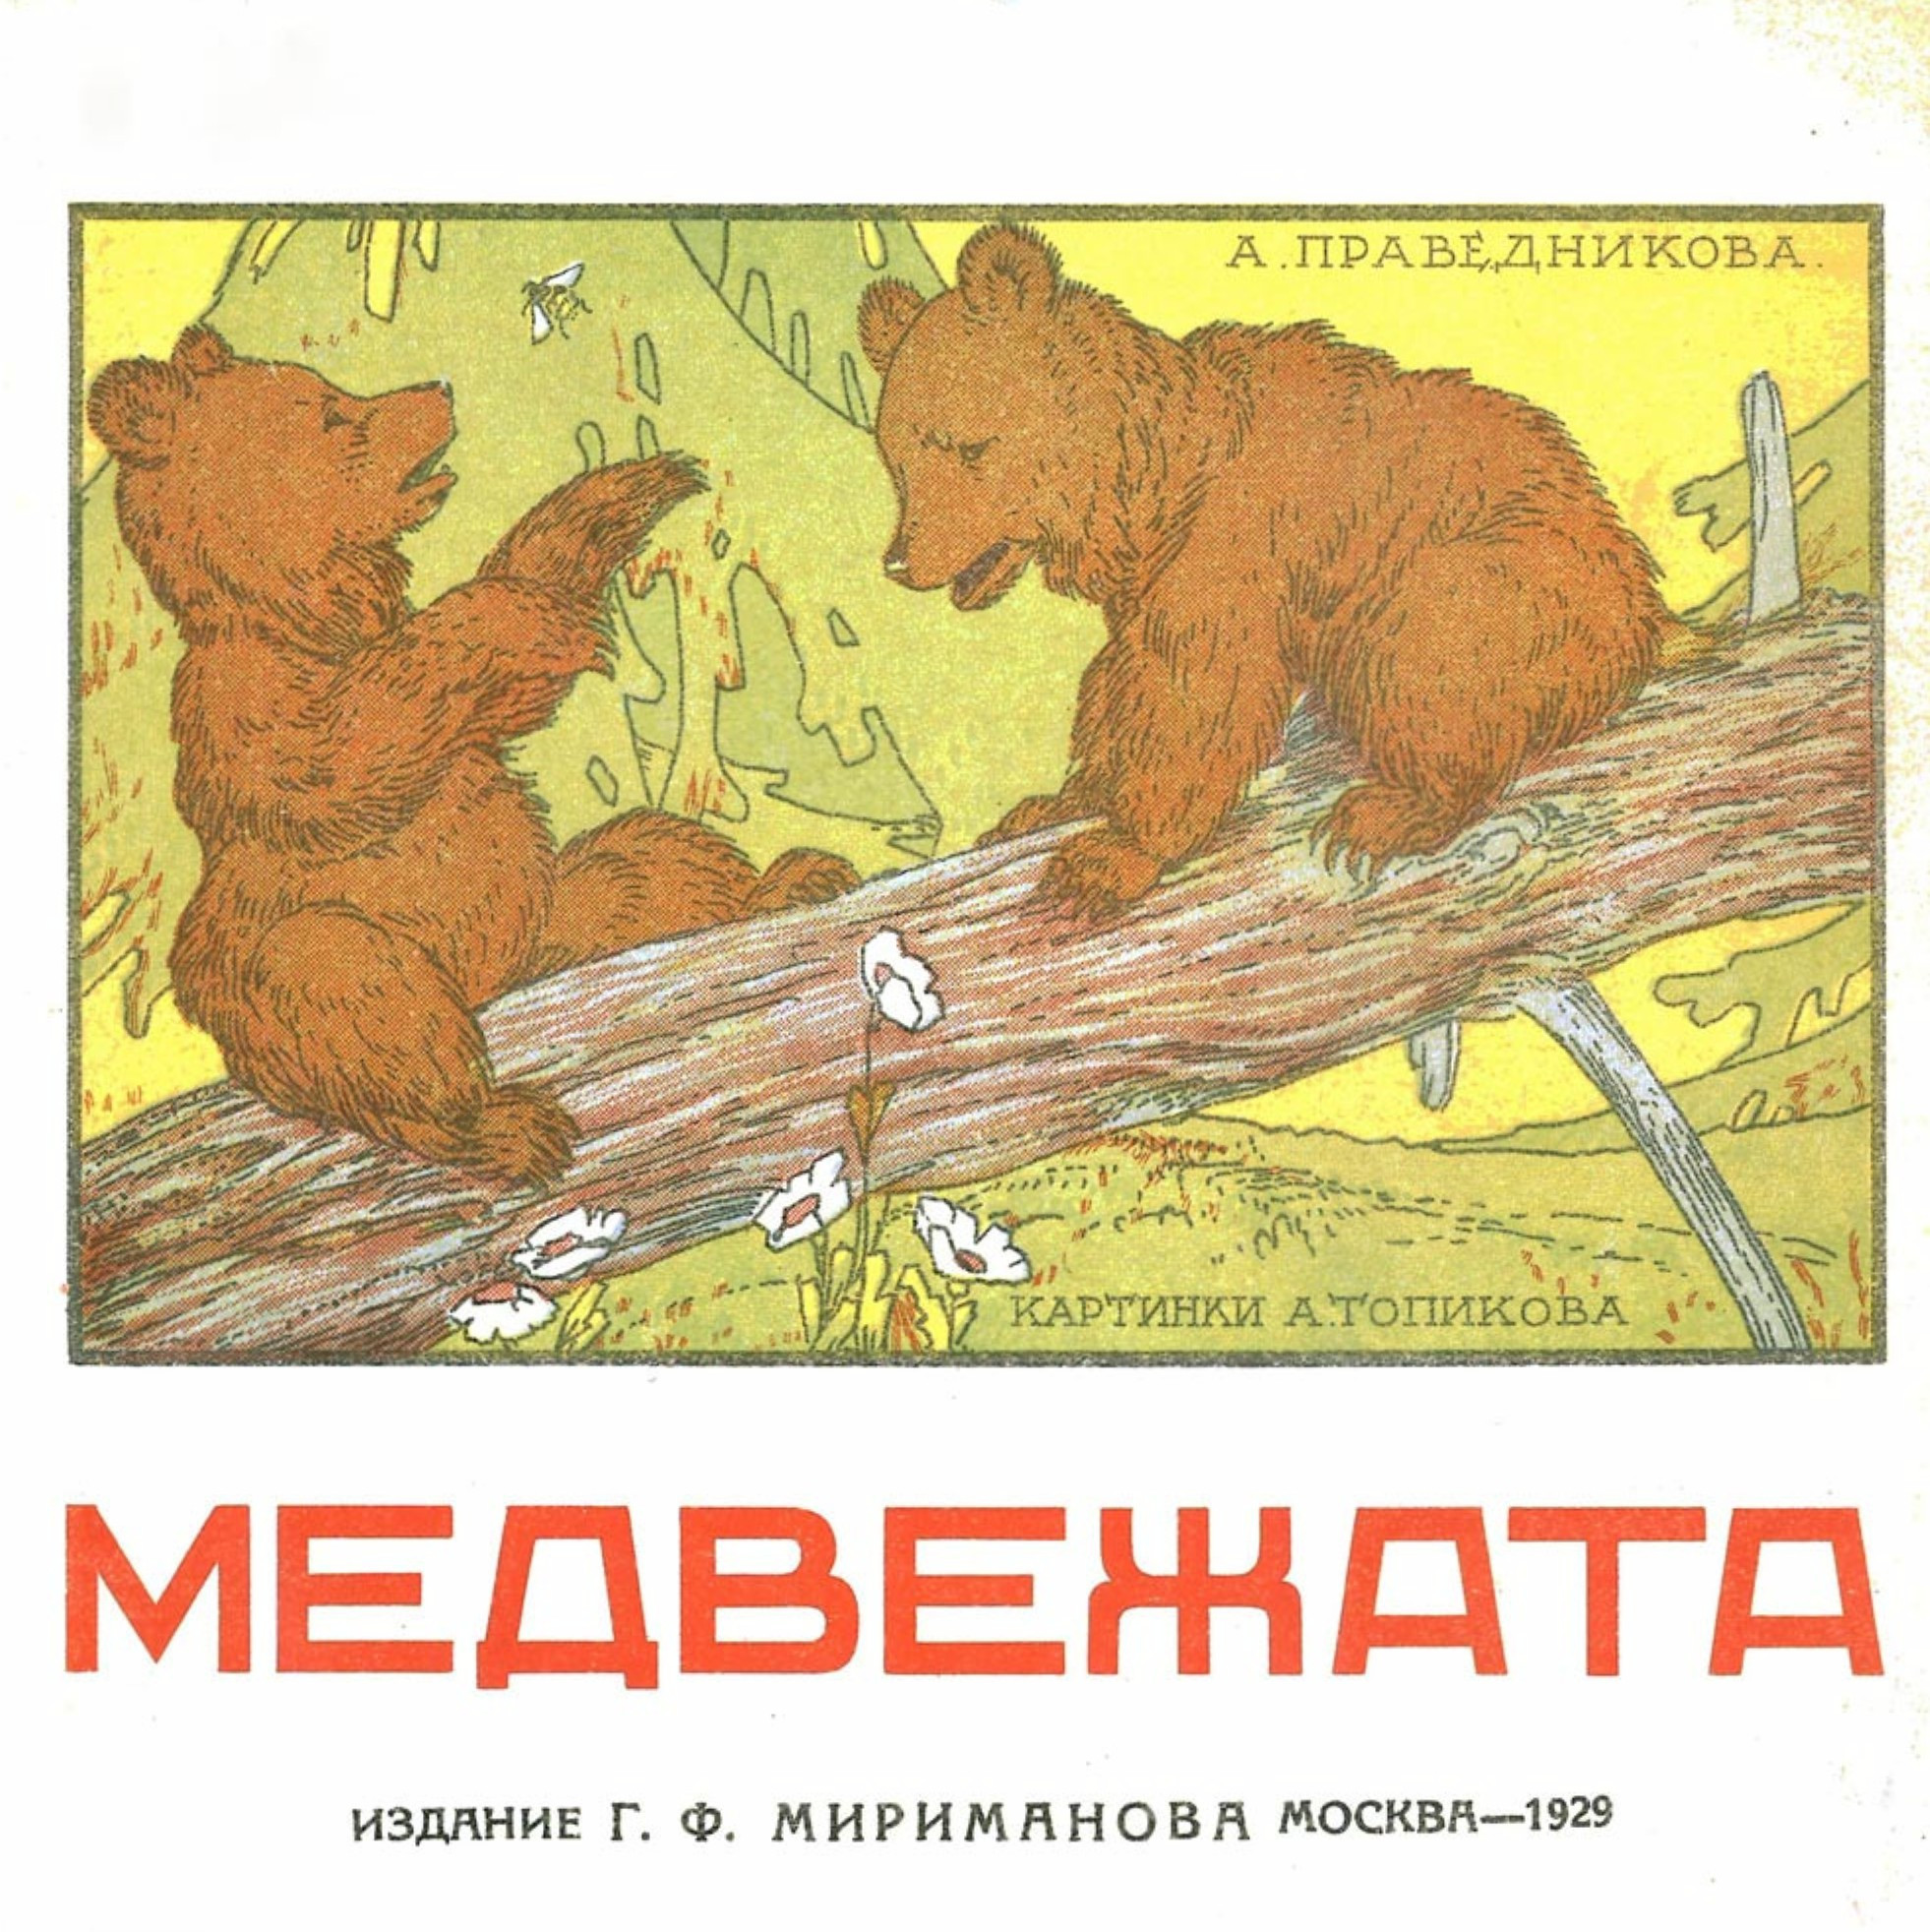 Праведникова Александра Дмитриевна - Медвежата - 1929